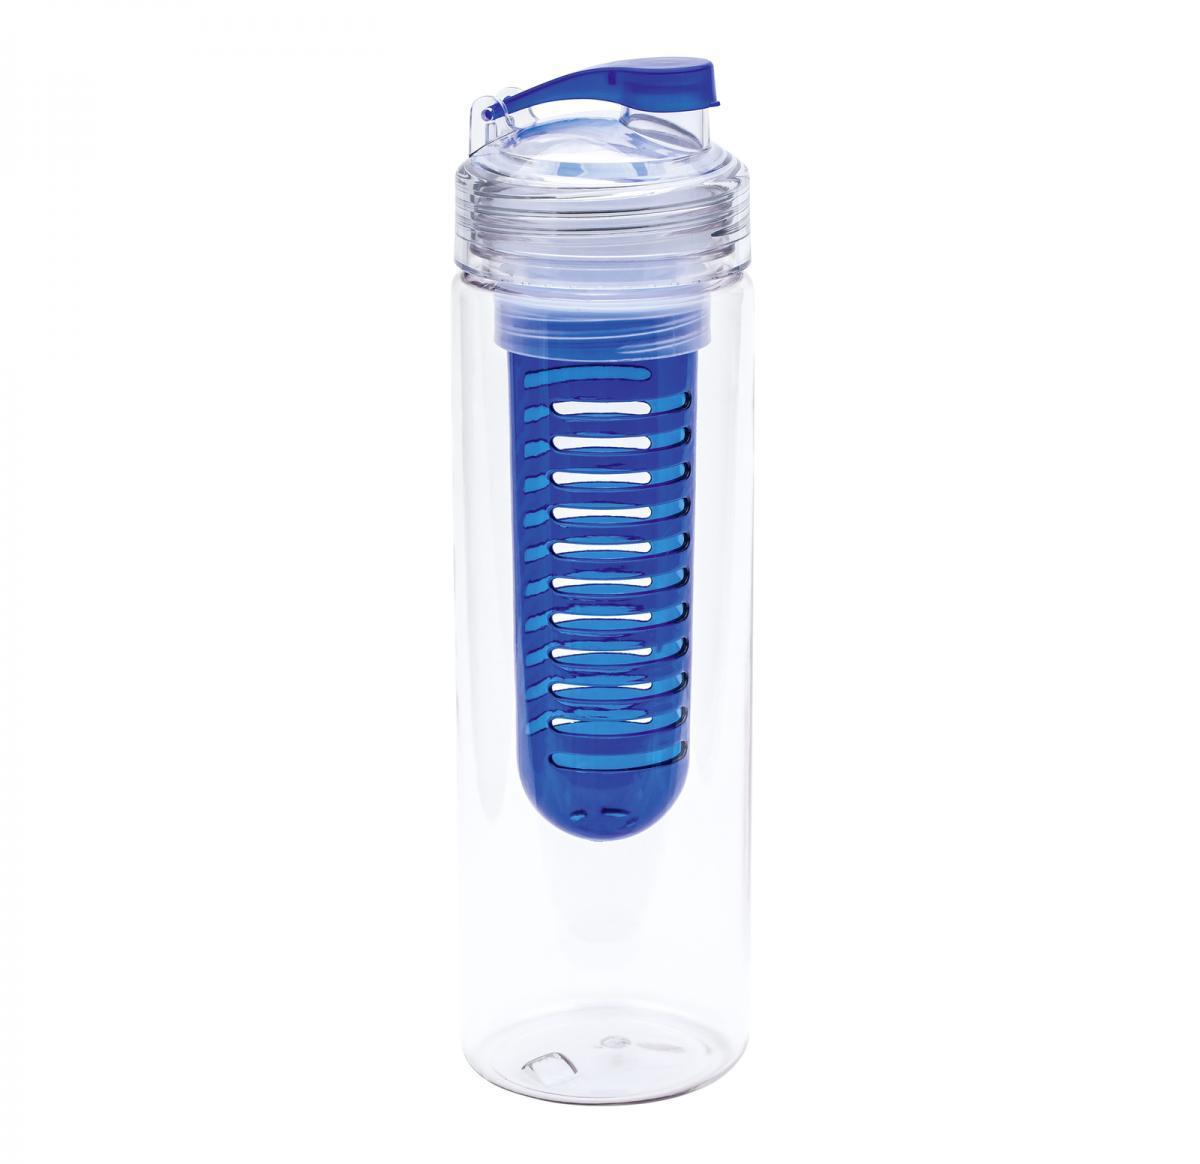 Branded Water Bottle With Fruit Infuser 700ml -JOLIETTA BLUE